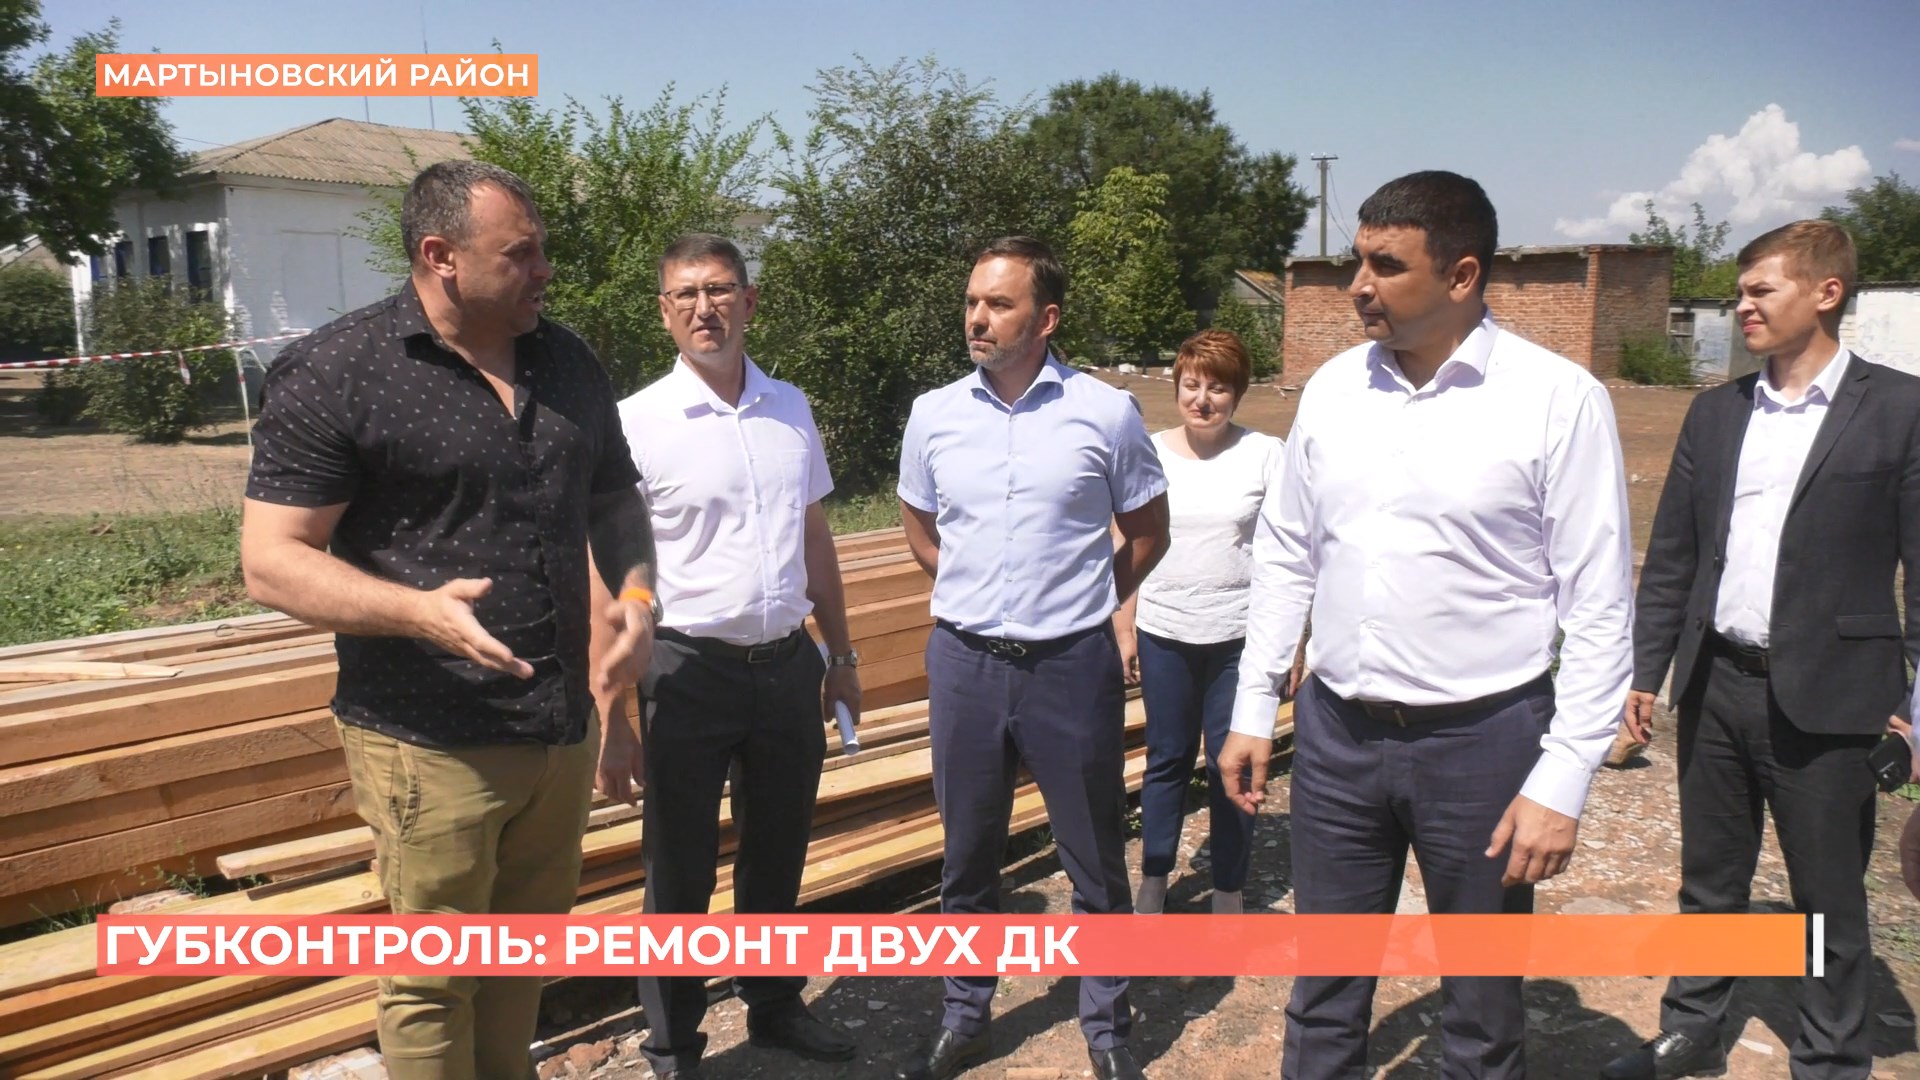 Группа губернаторского контроля оценила ремонт объектов в Мартыновском районе